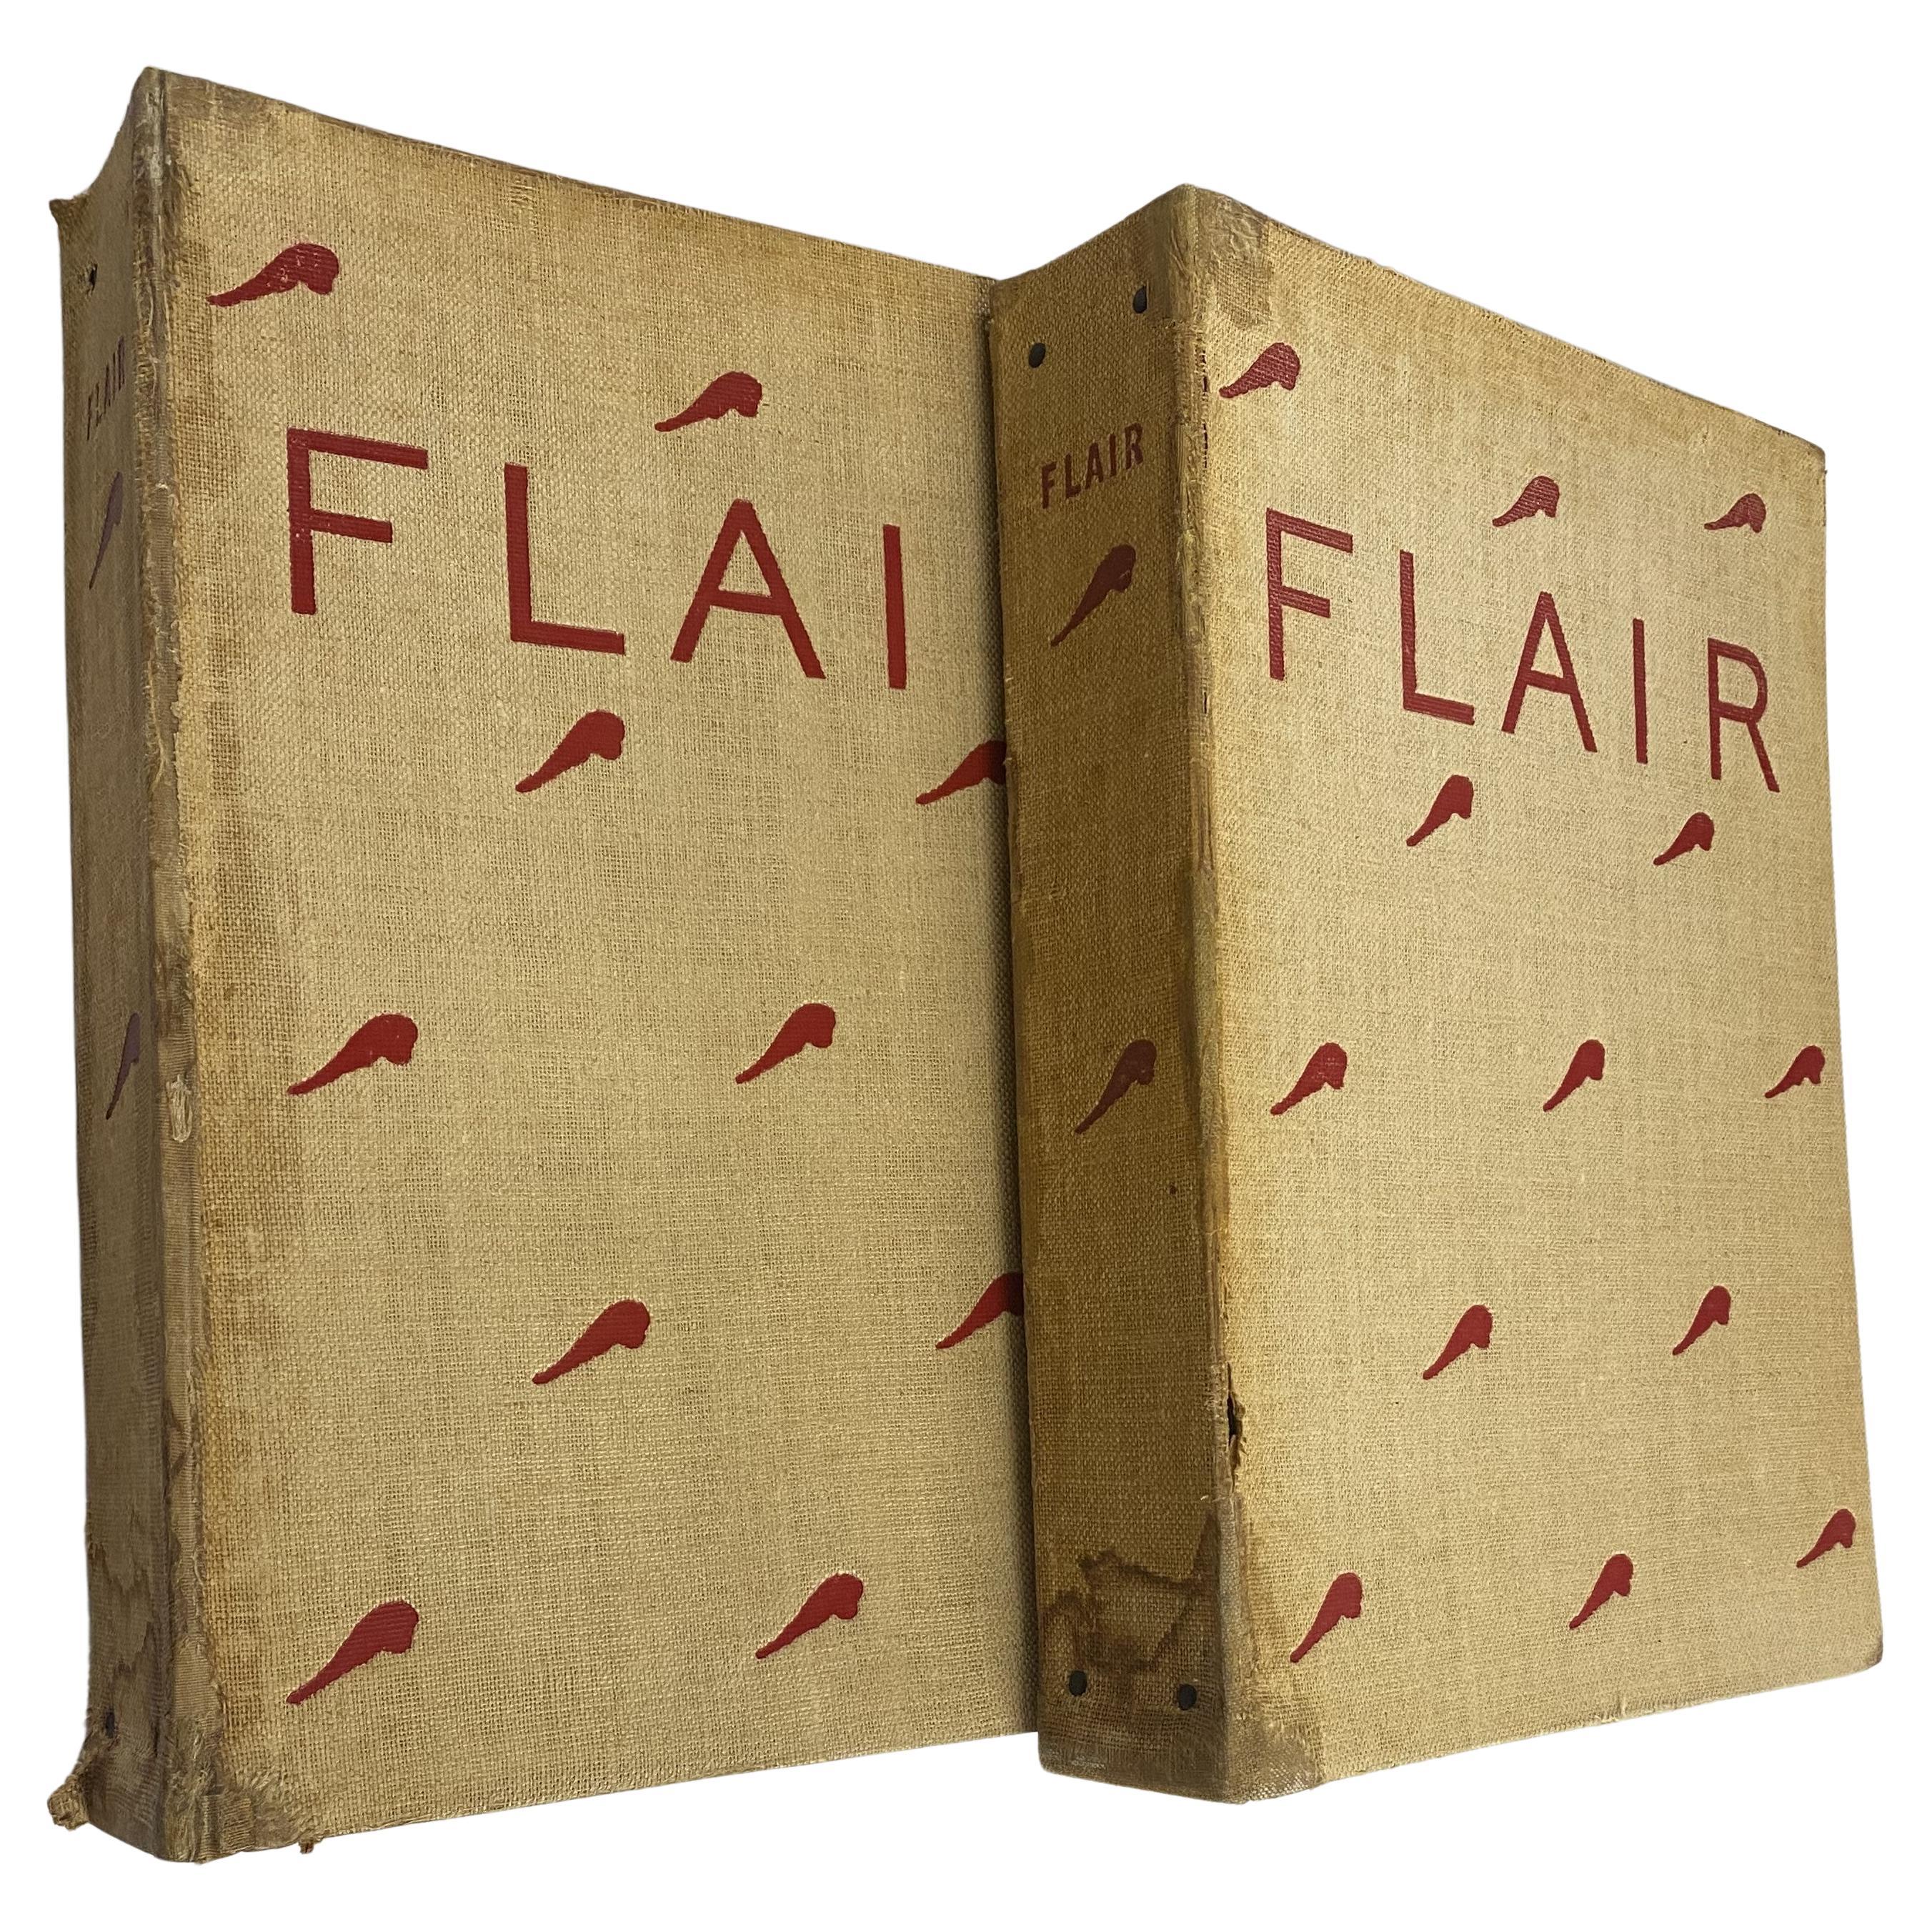 Flair Magazine, ensemble complet, de février 1950 à janvier 1951 (livre)